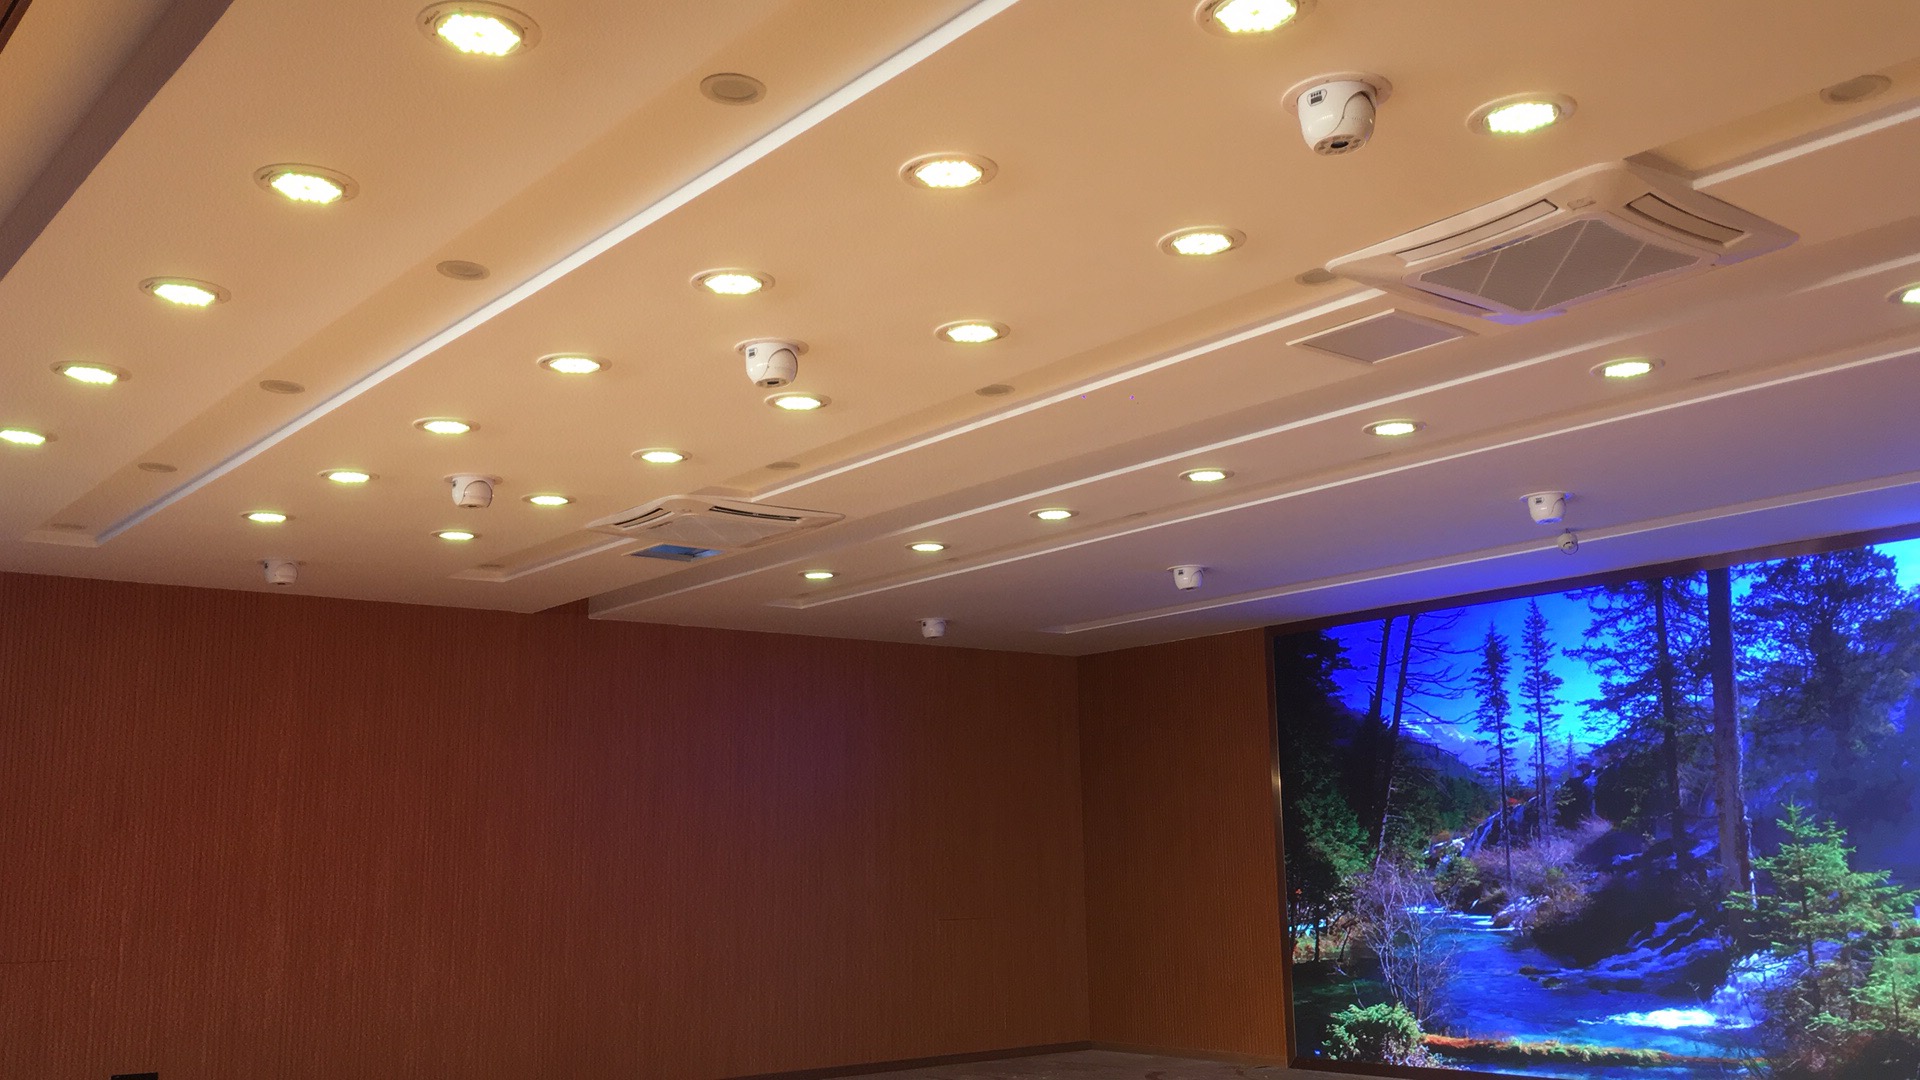 南京金陵中学民乐厅室内照明项目——2019神灯奖申报工程